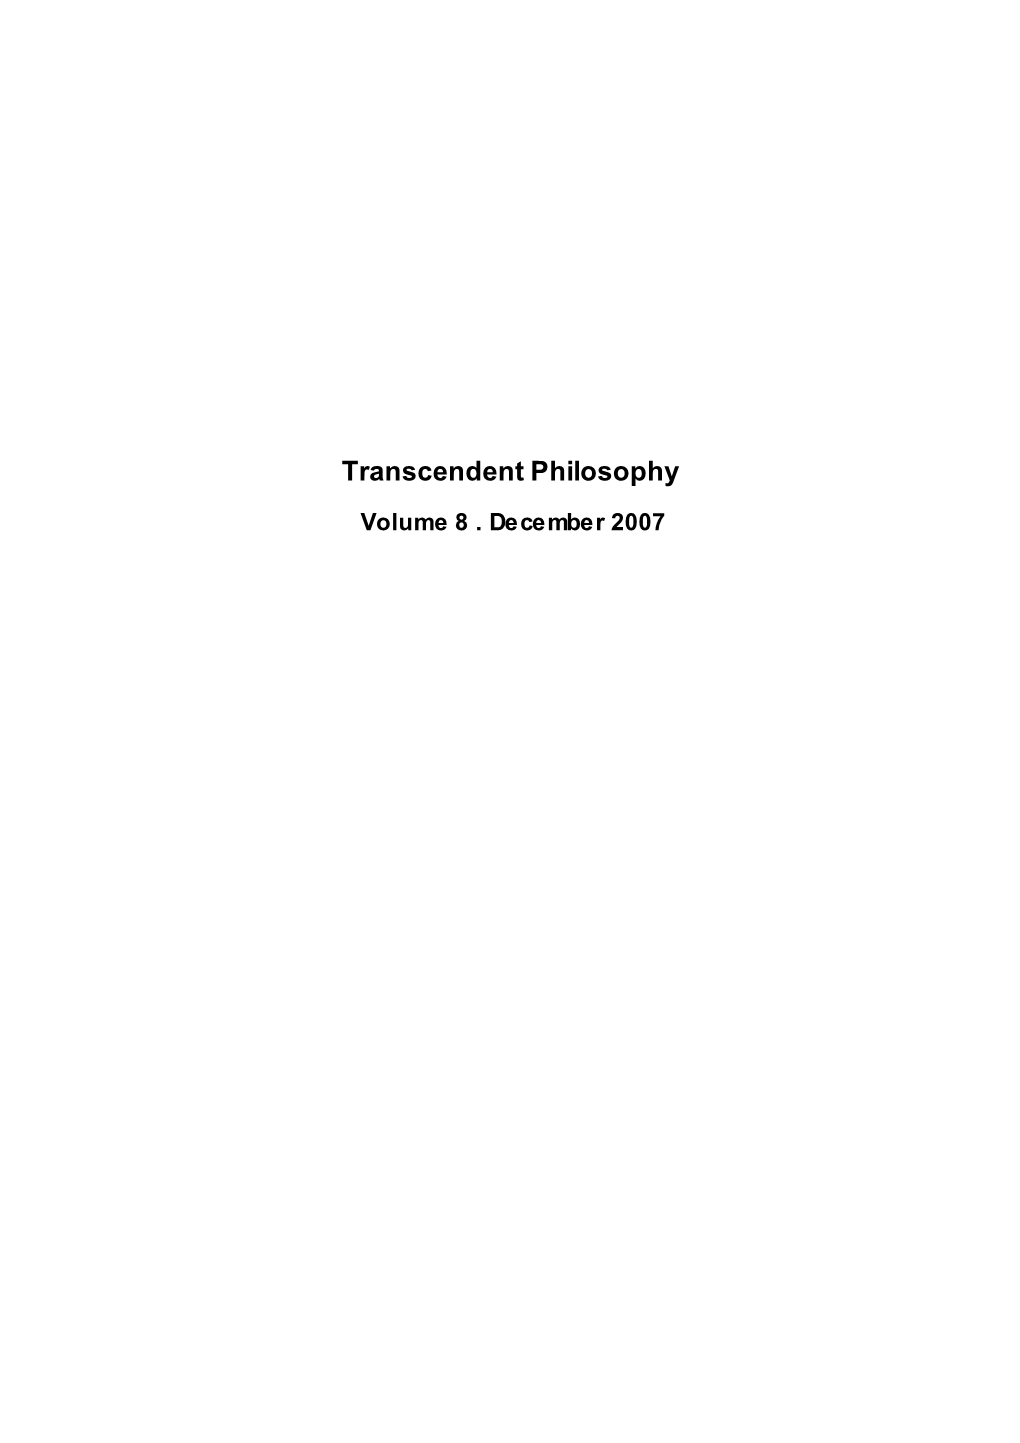 Transcendent Philosophy Volume 8